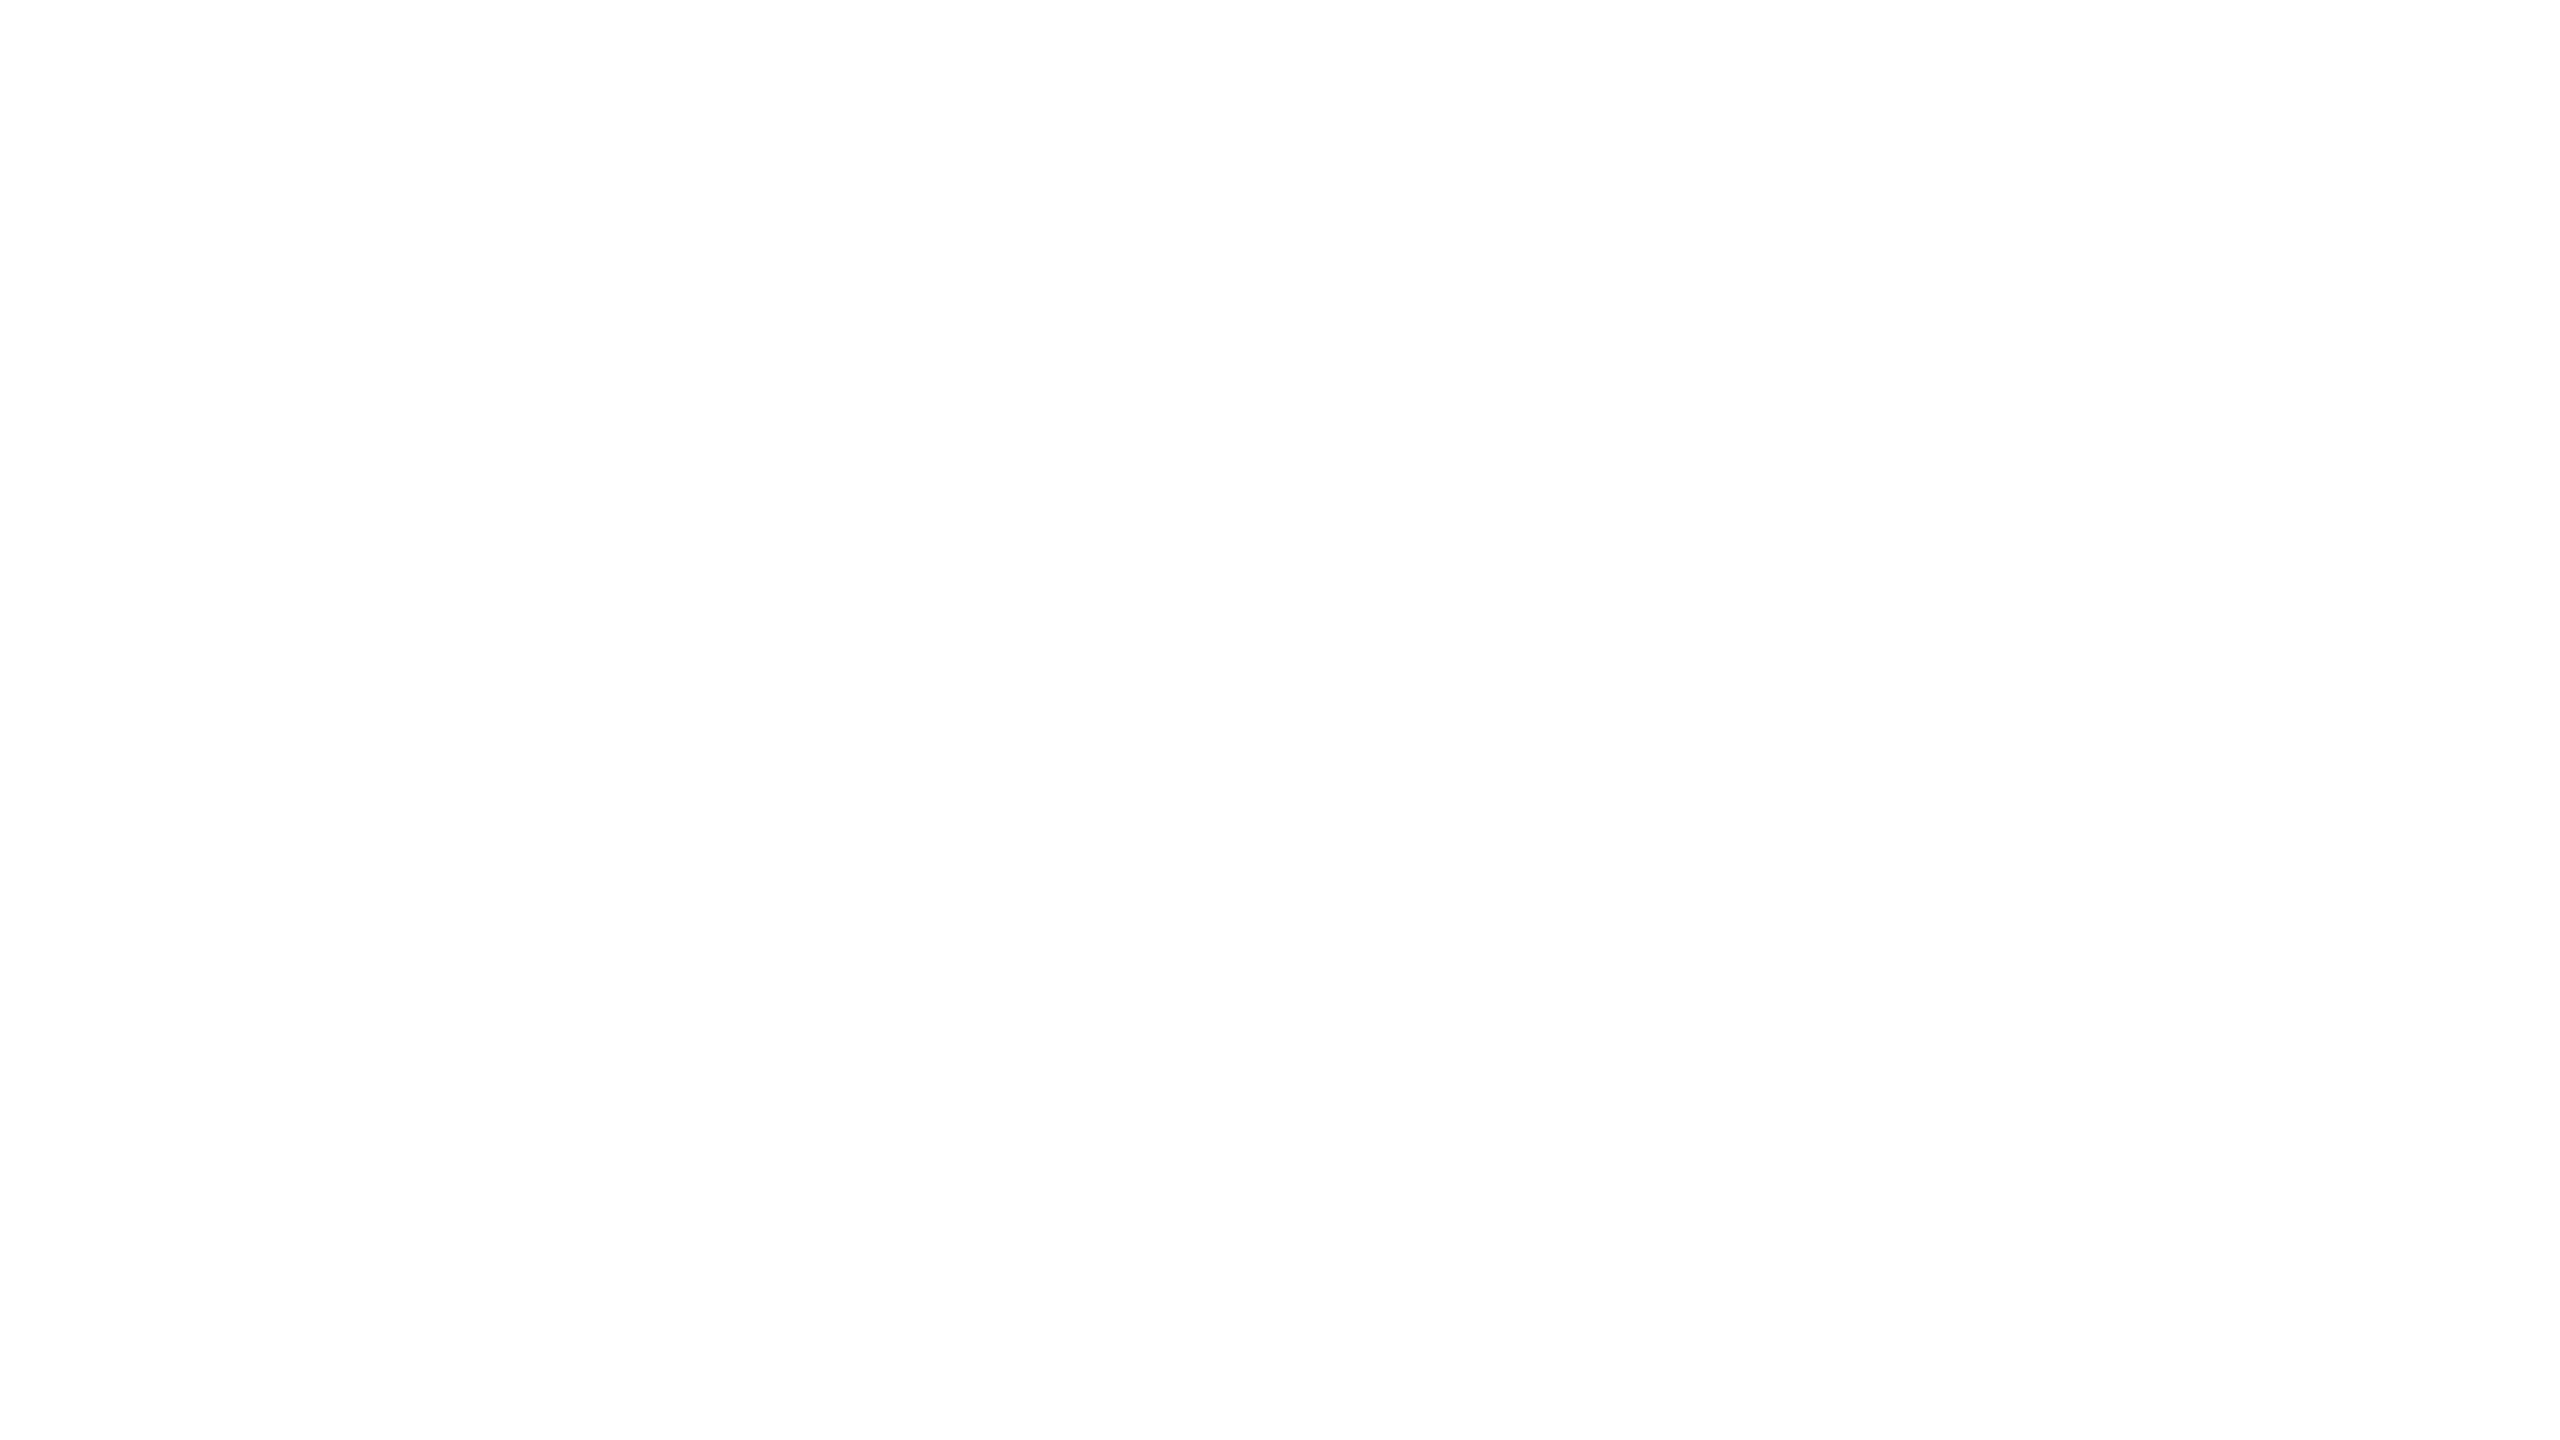 cinimax-logo-1